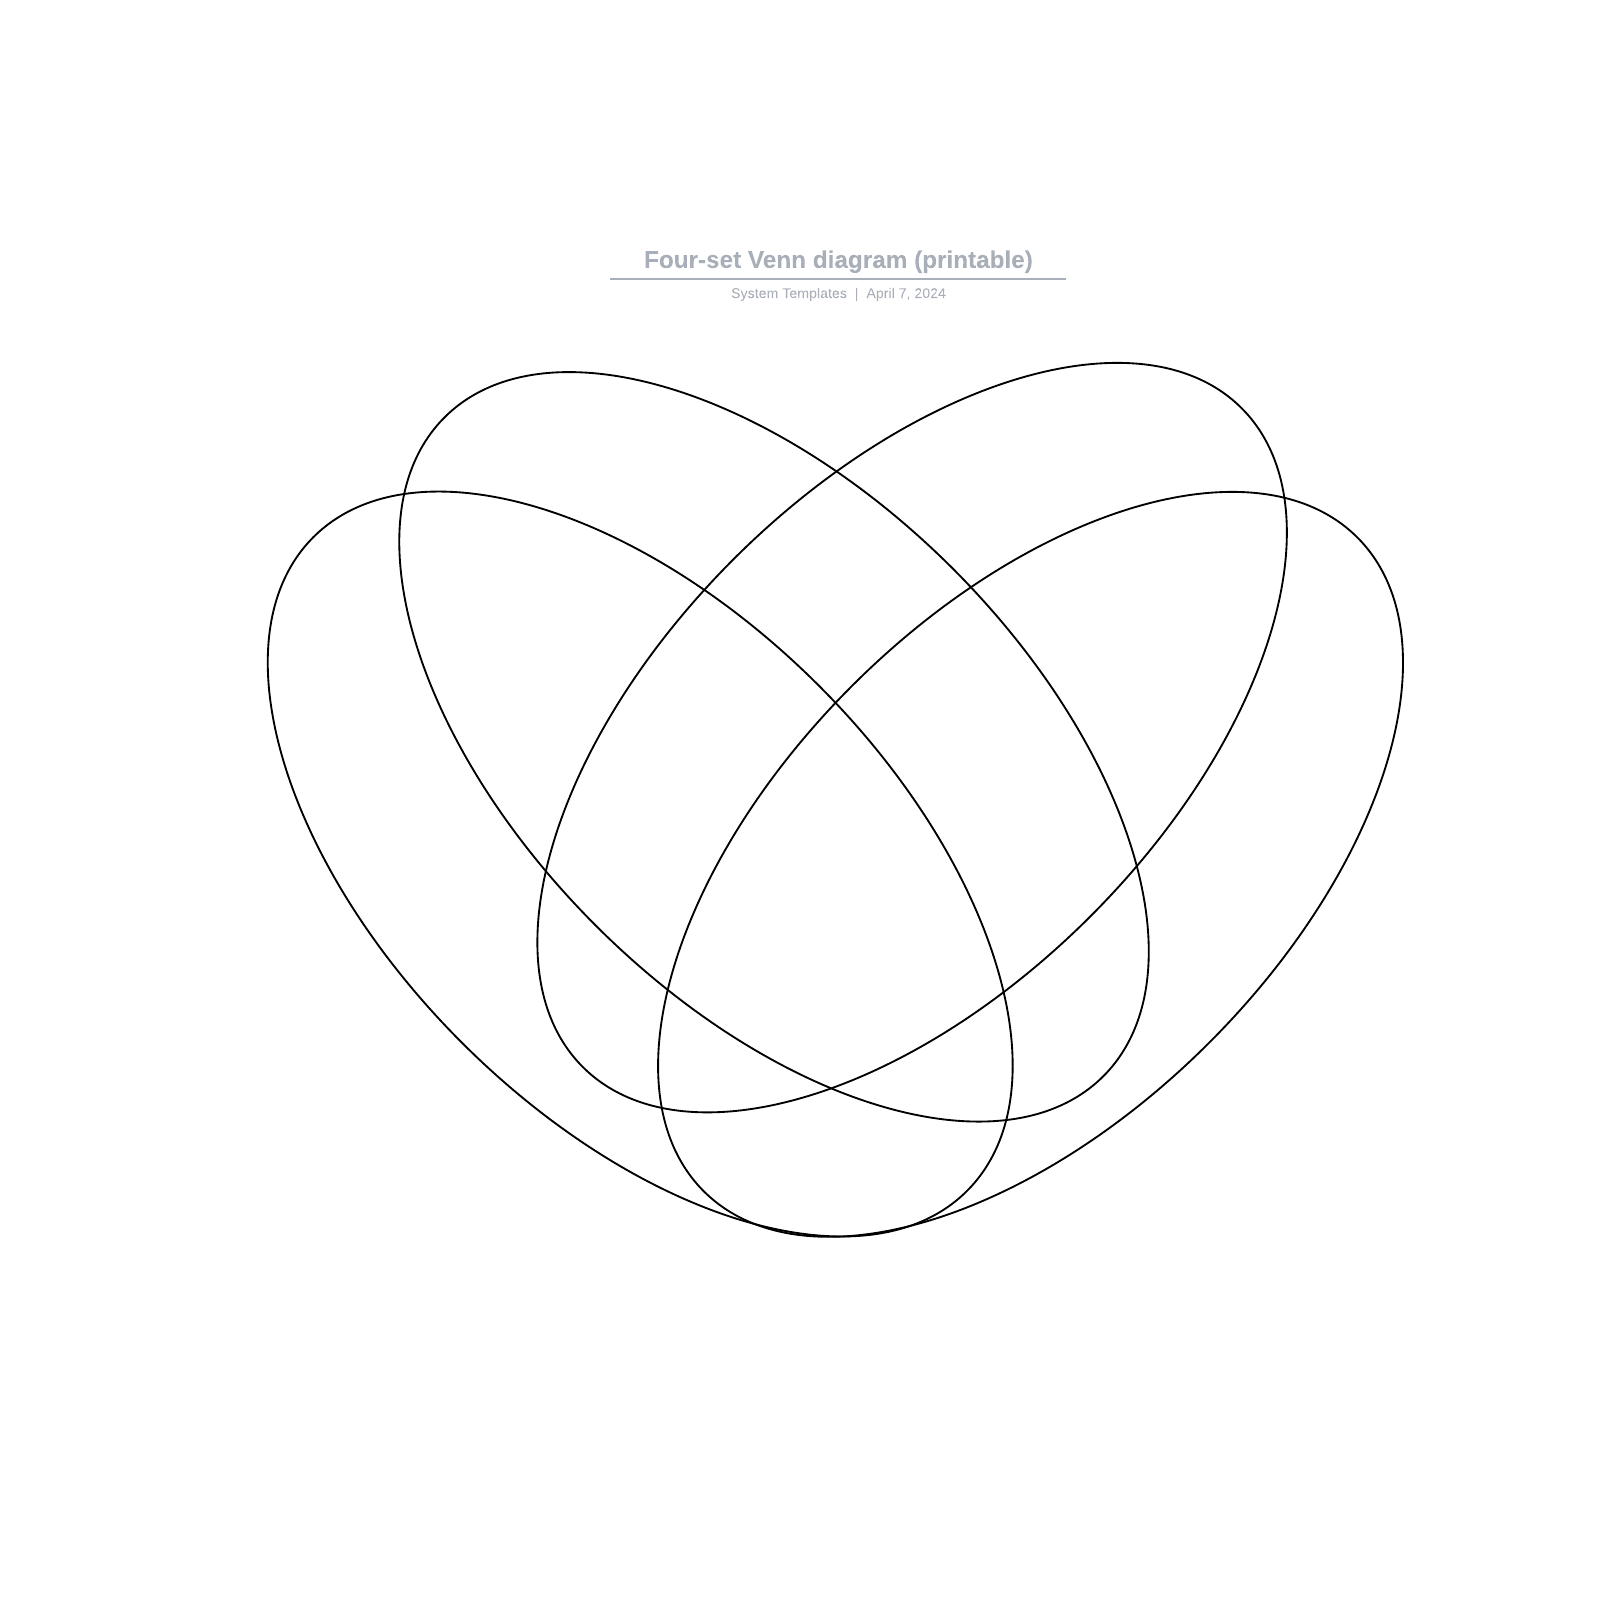 Four-set Venn diagram (printable) example